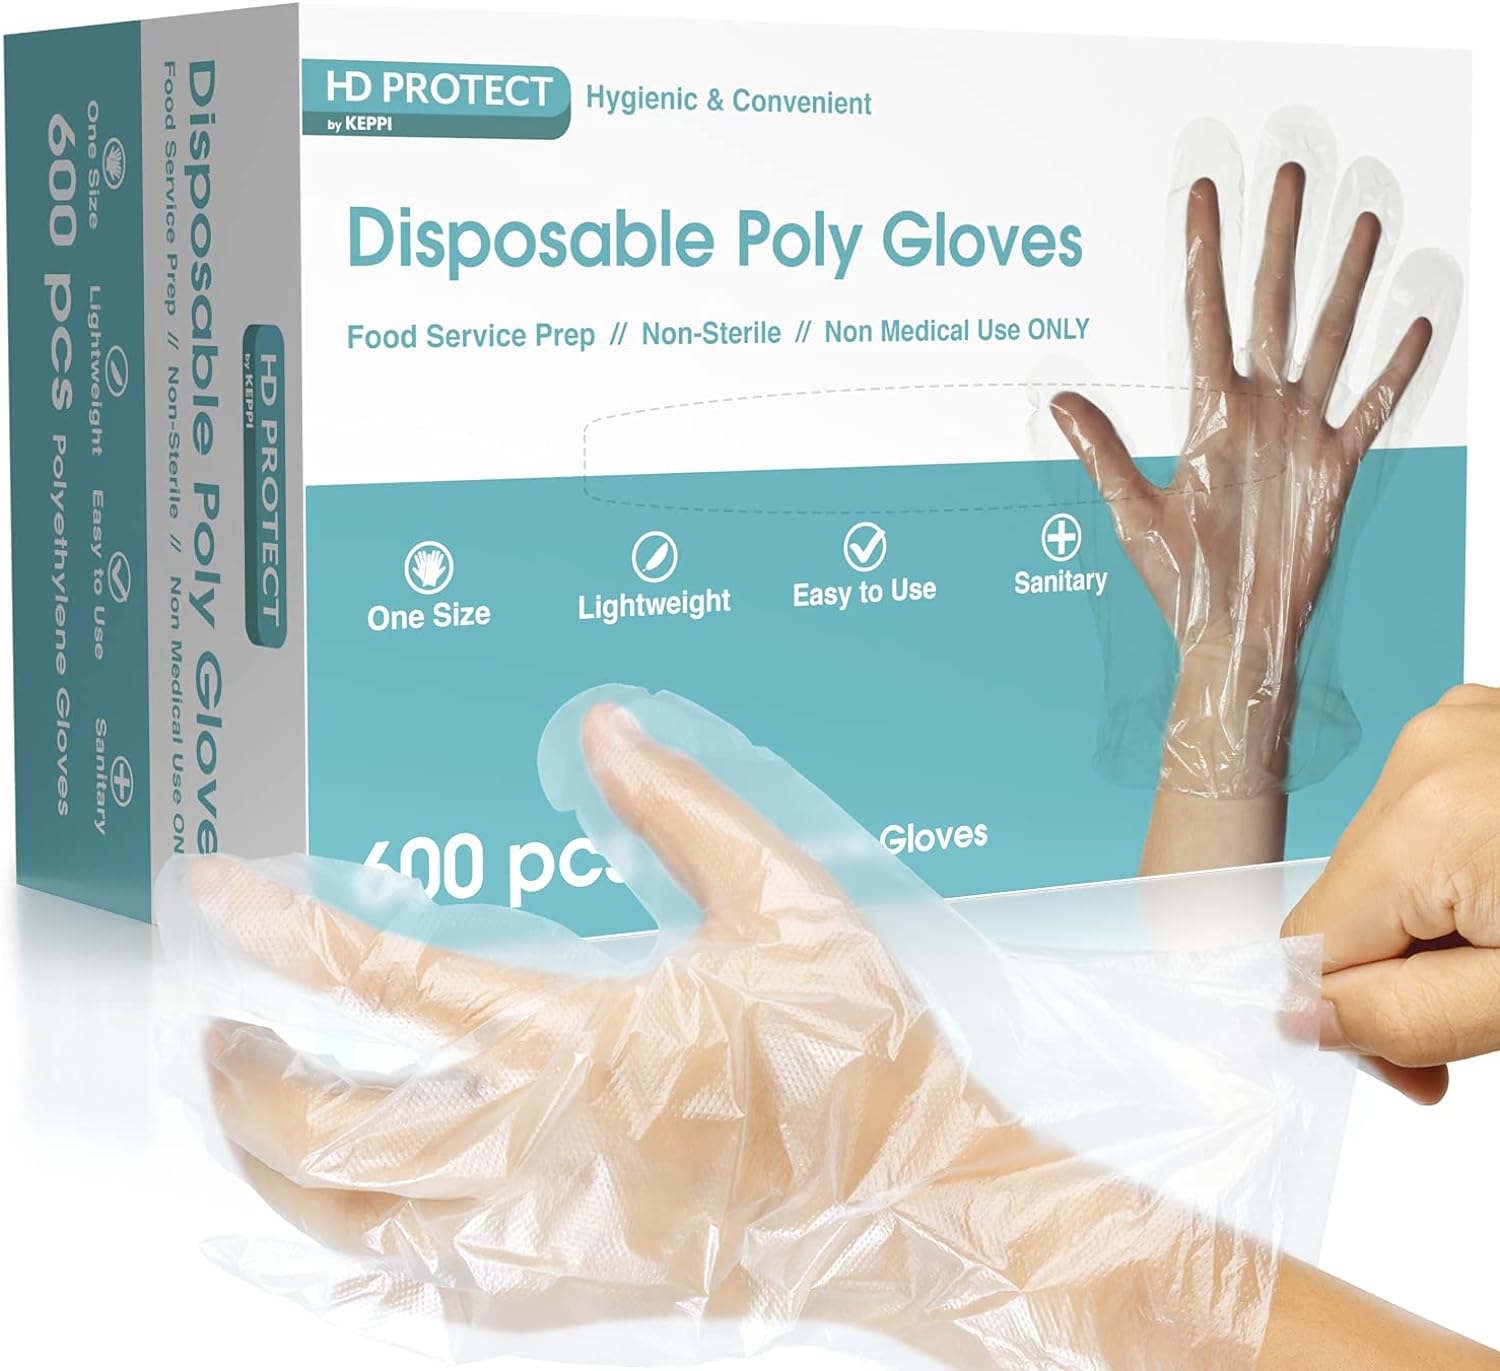 600 Pack Plastic Gloves - Best Value Cooking Gloves Disposable Food Safe. Bulk Food Safe Gloves - Transparent Food Grade Gloves & Gloves for Cooking. One Size Fits Most Guantes Desechables